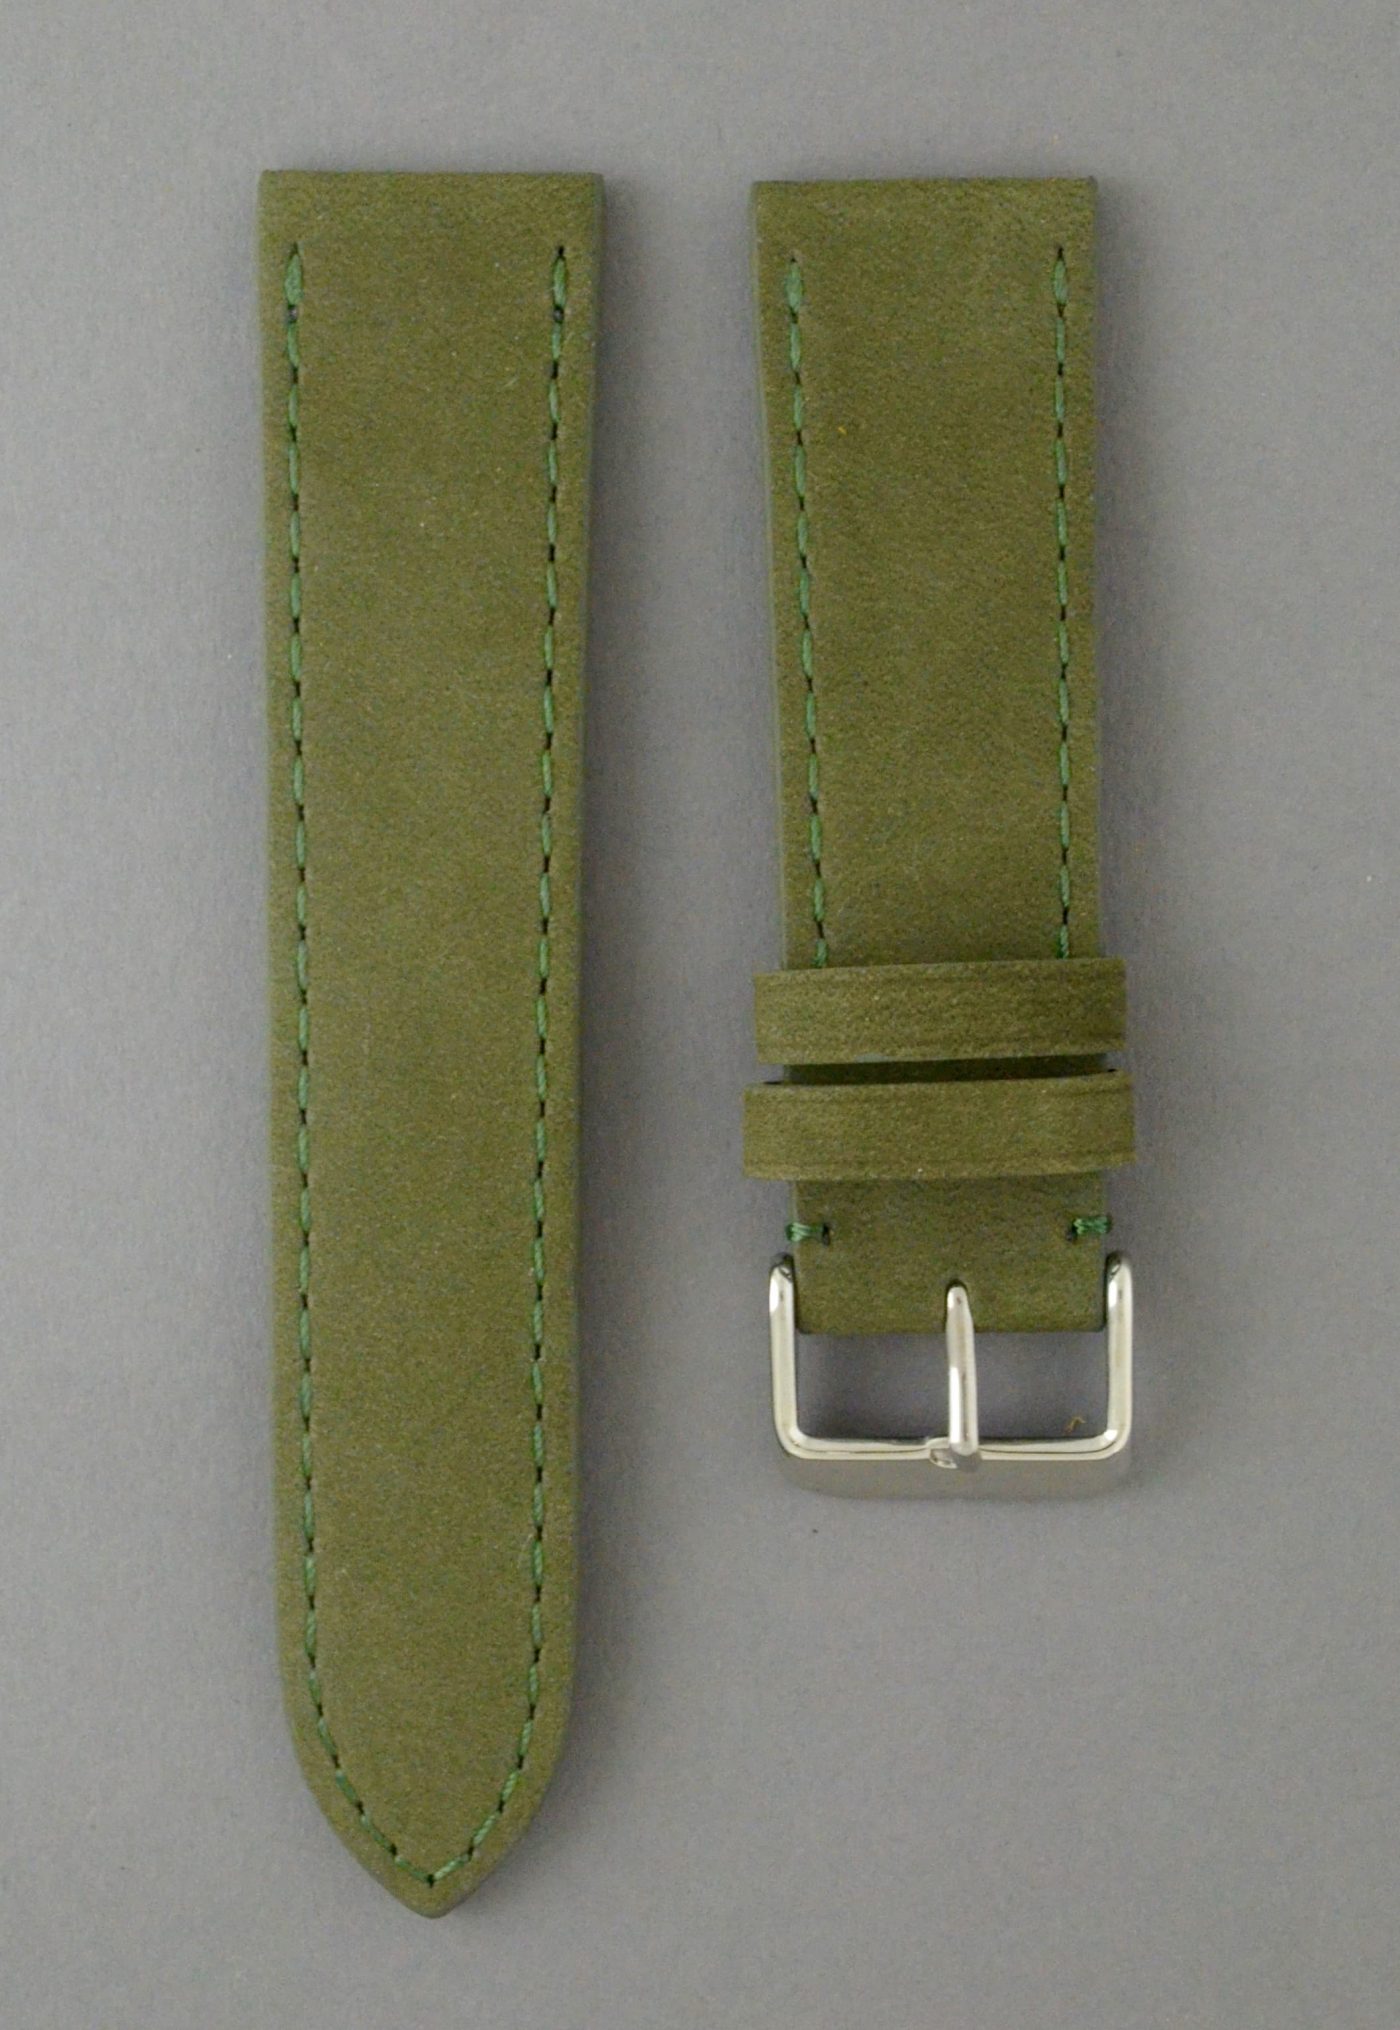 BC3-1 麂皮風格平身牛皮錶帶 - 軍綠色